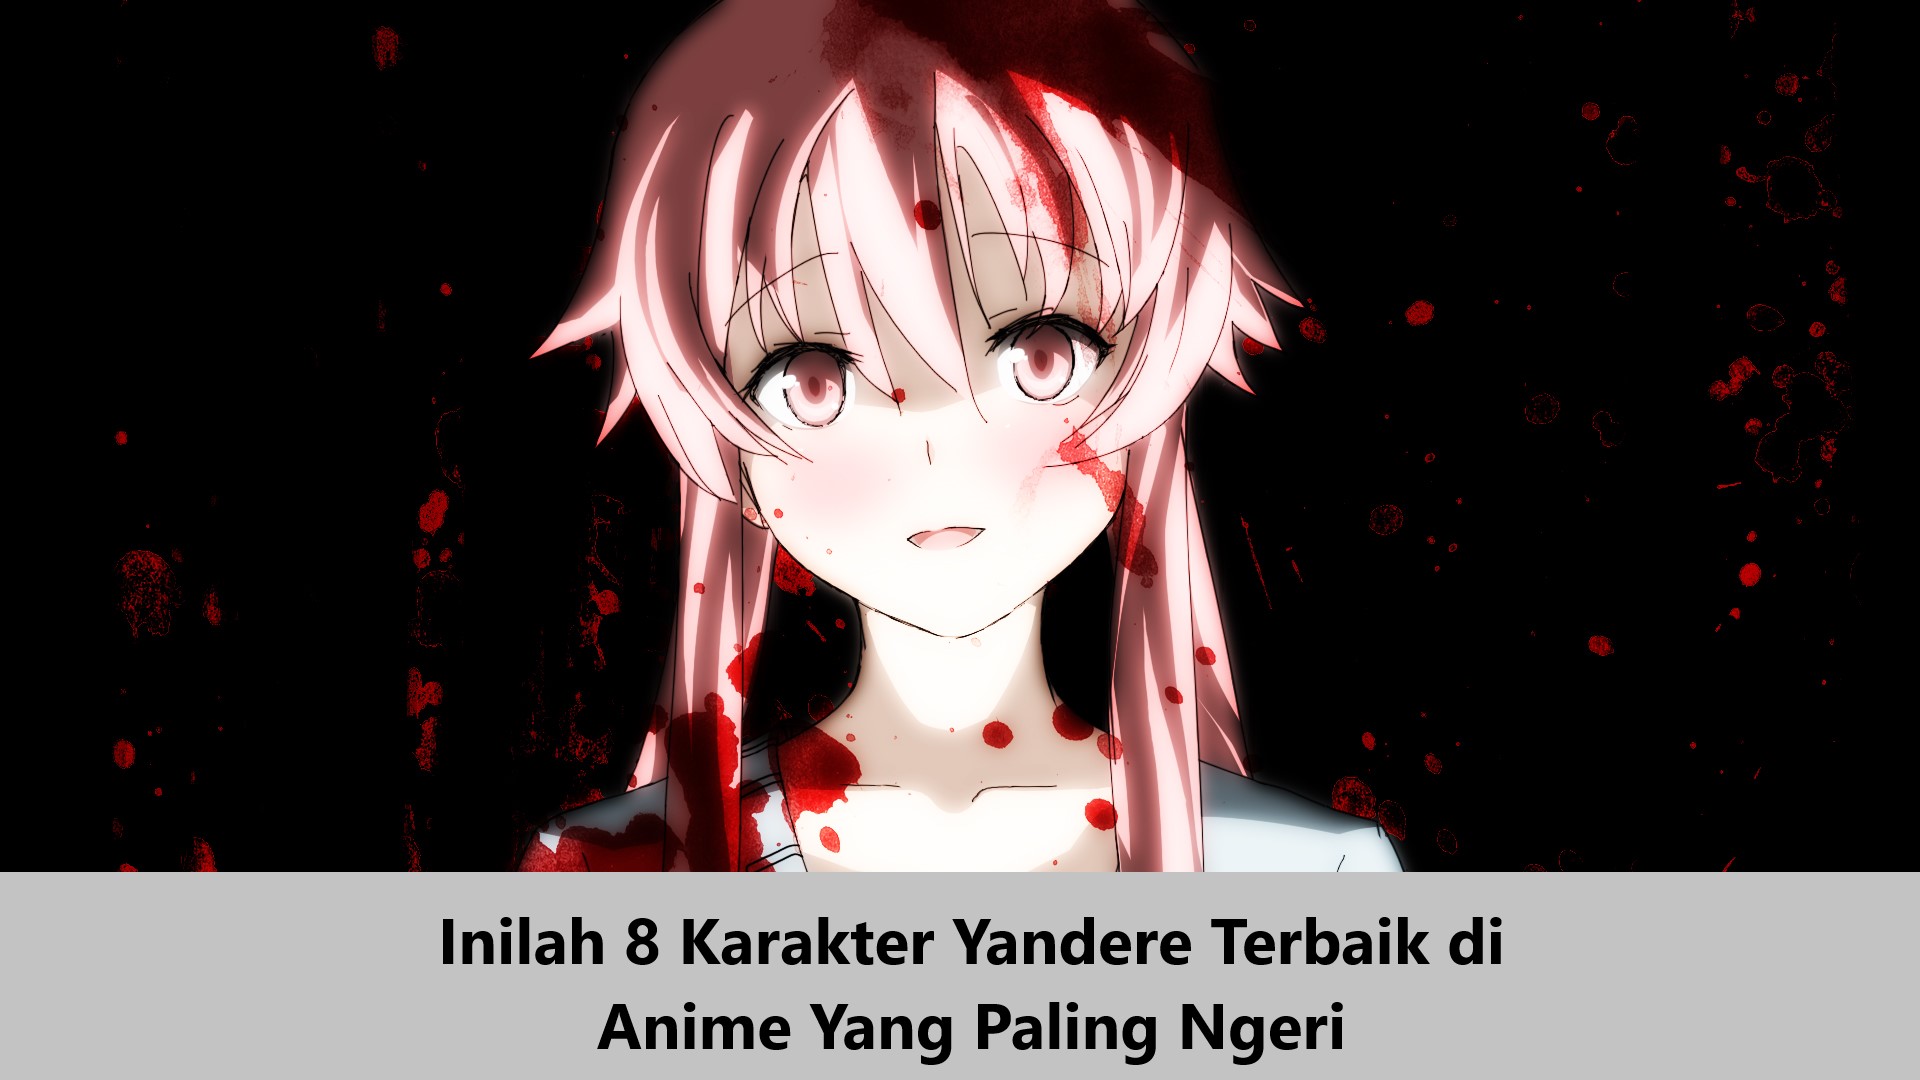 Inilah 8 Karakter Yandere Terbaik di Anime Yang Paling Ngeri